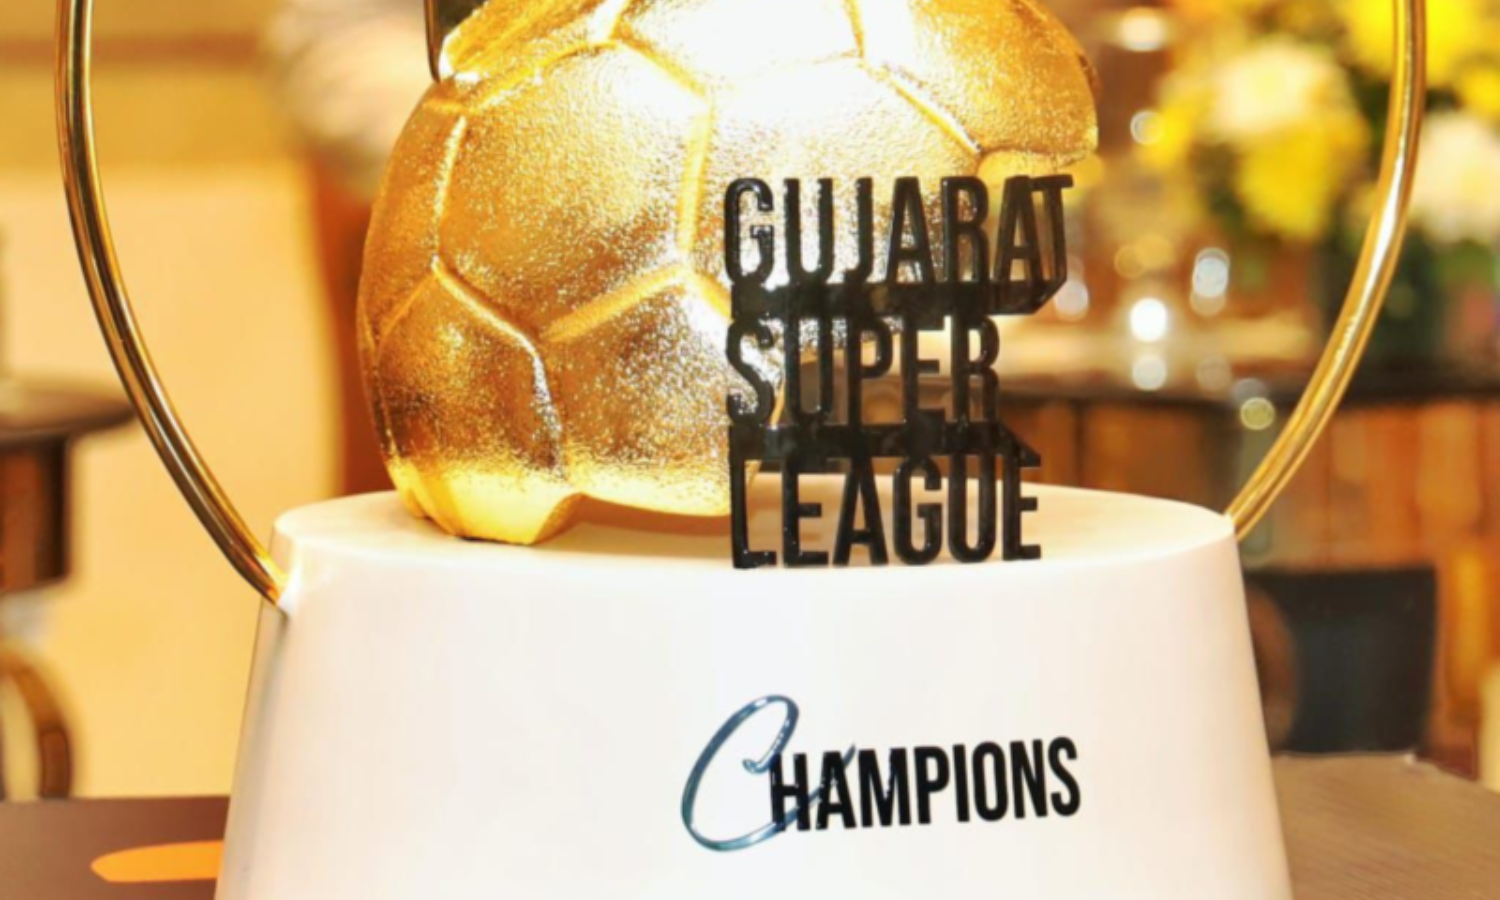 Inaugural season of Gujarat Super League to kick off on May 1